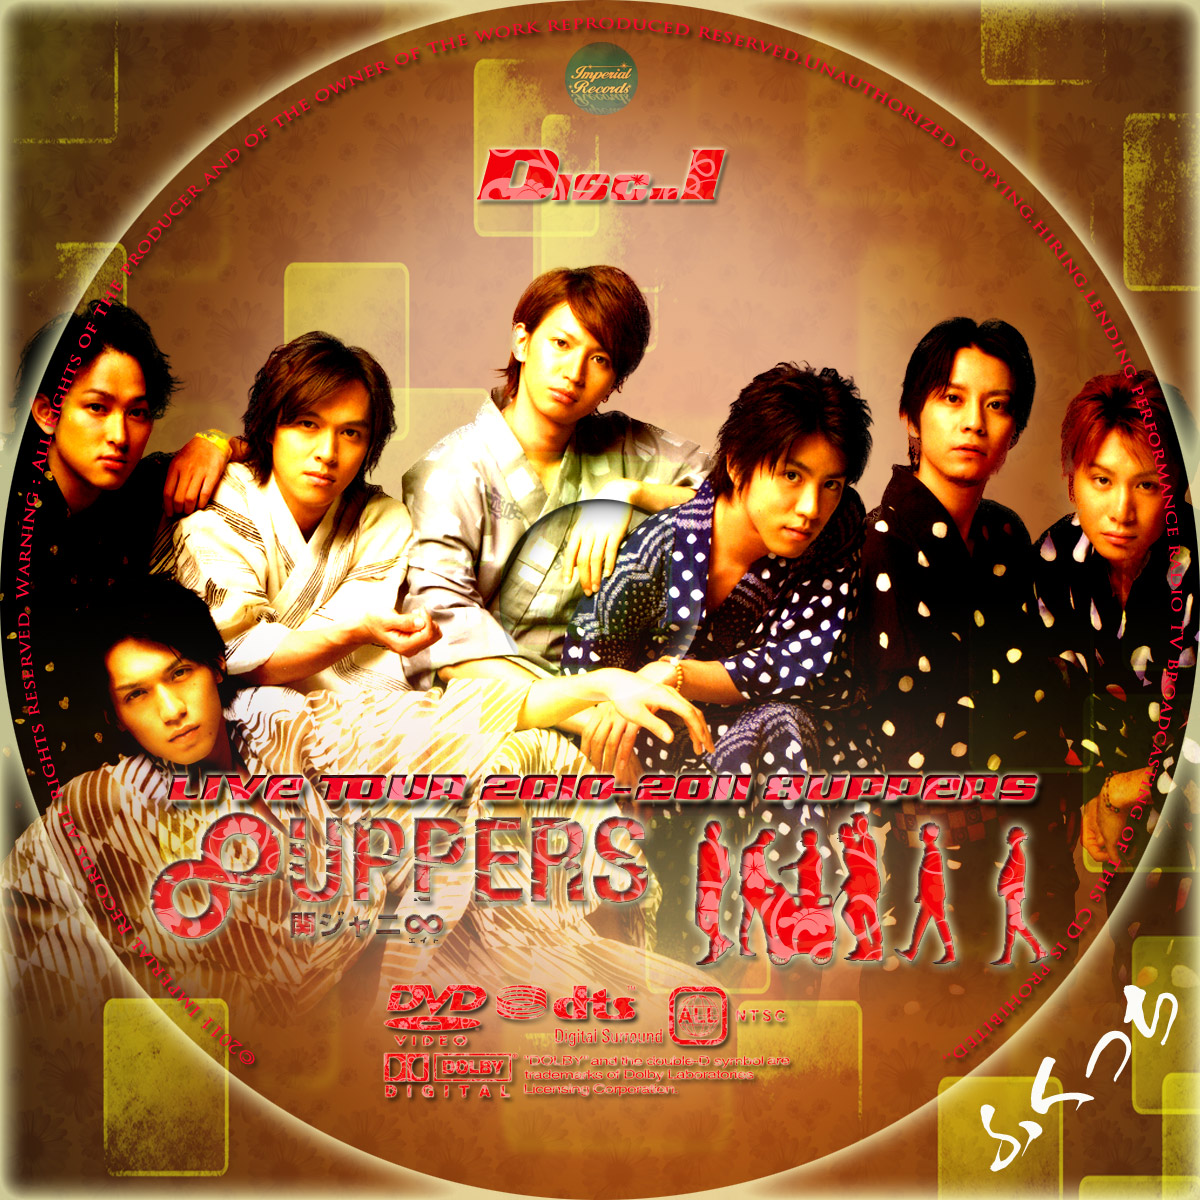 関ジャニ∞ - LIVE TOUR 2010-2011 8UPPERS | ふくっちの音楽CD/DVD 